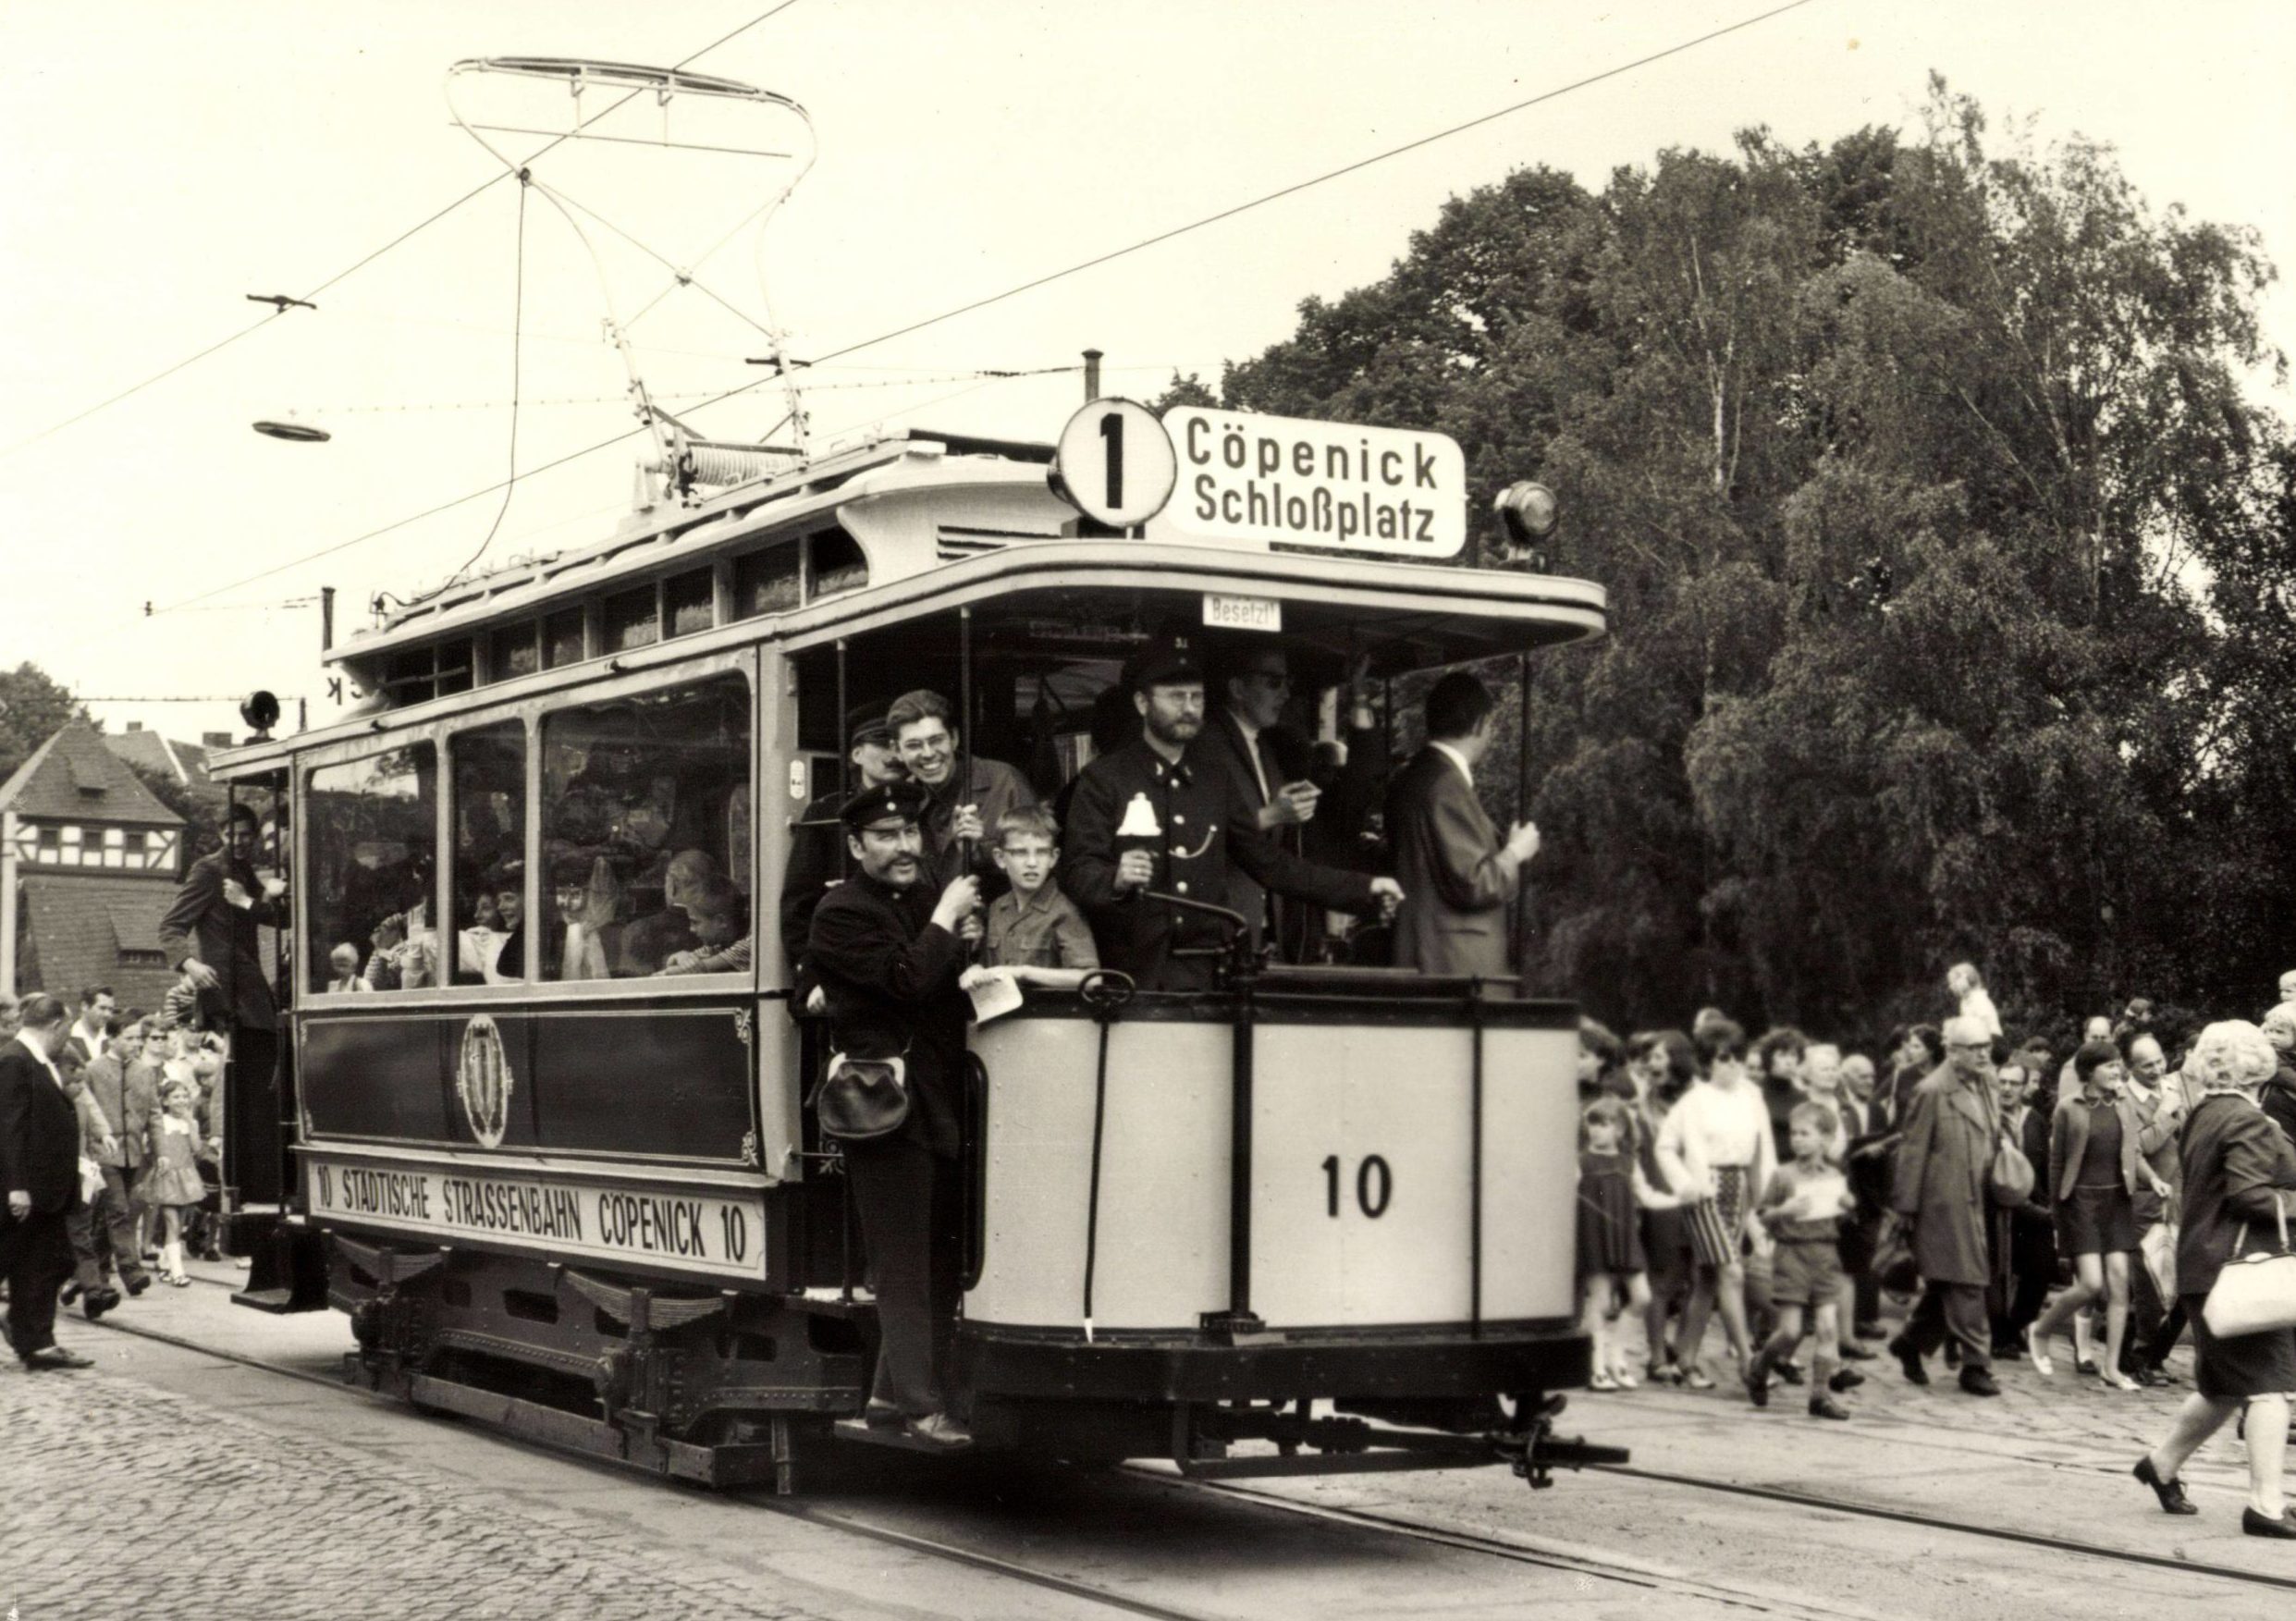 Straßenbahn in Berlin: Die Tram fährt bis nach Köpenick, frühe 1930er-Jahre. Foto: Imago/Arkivi